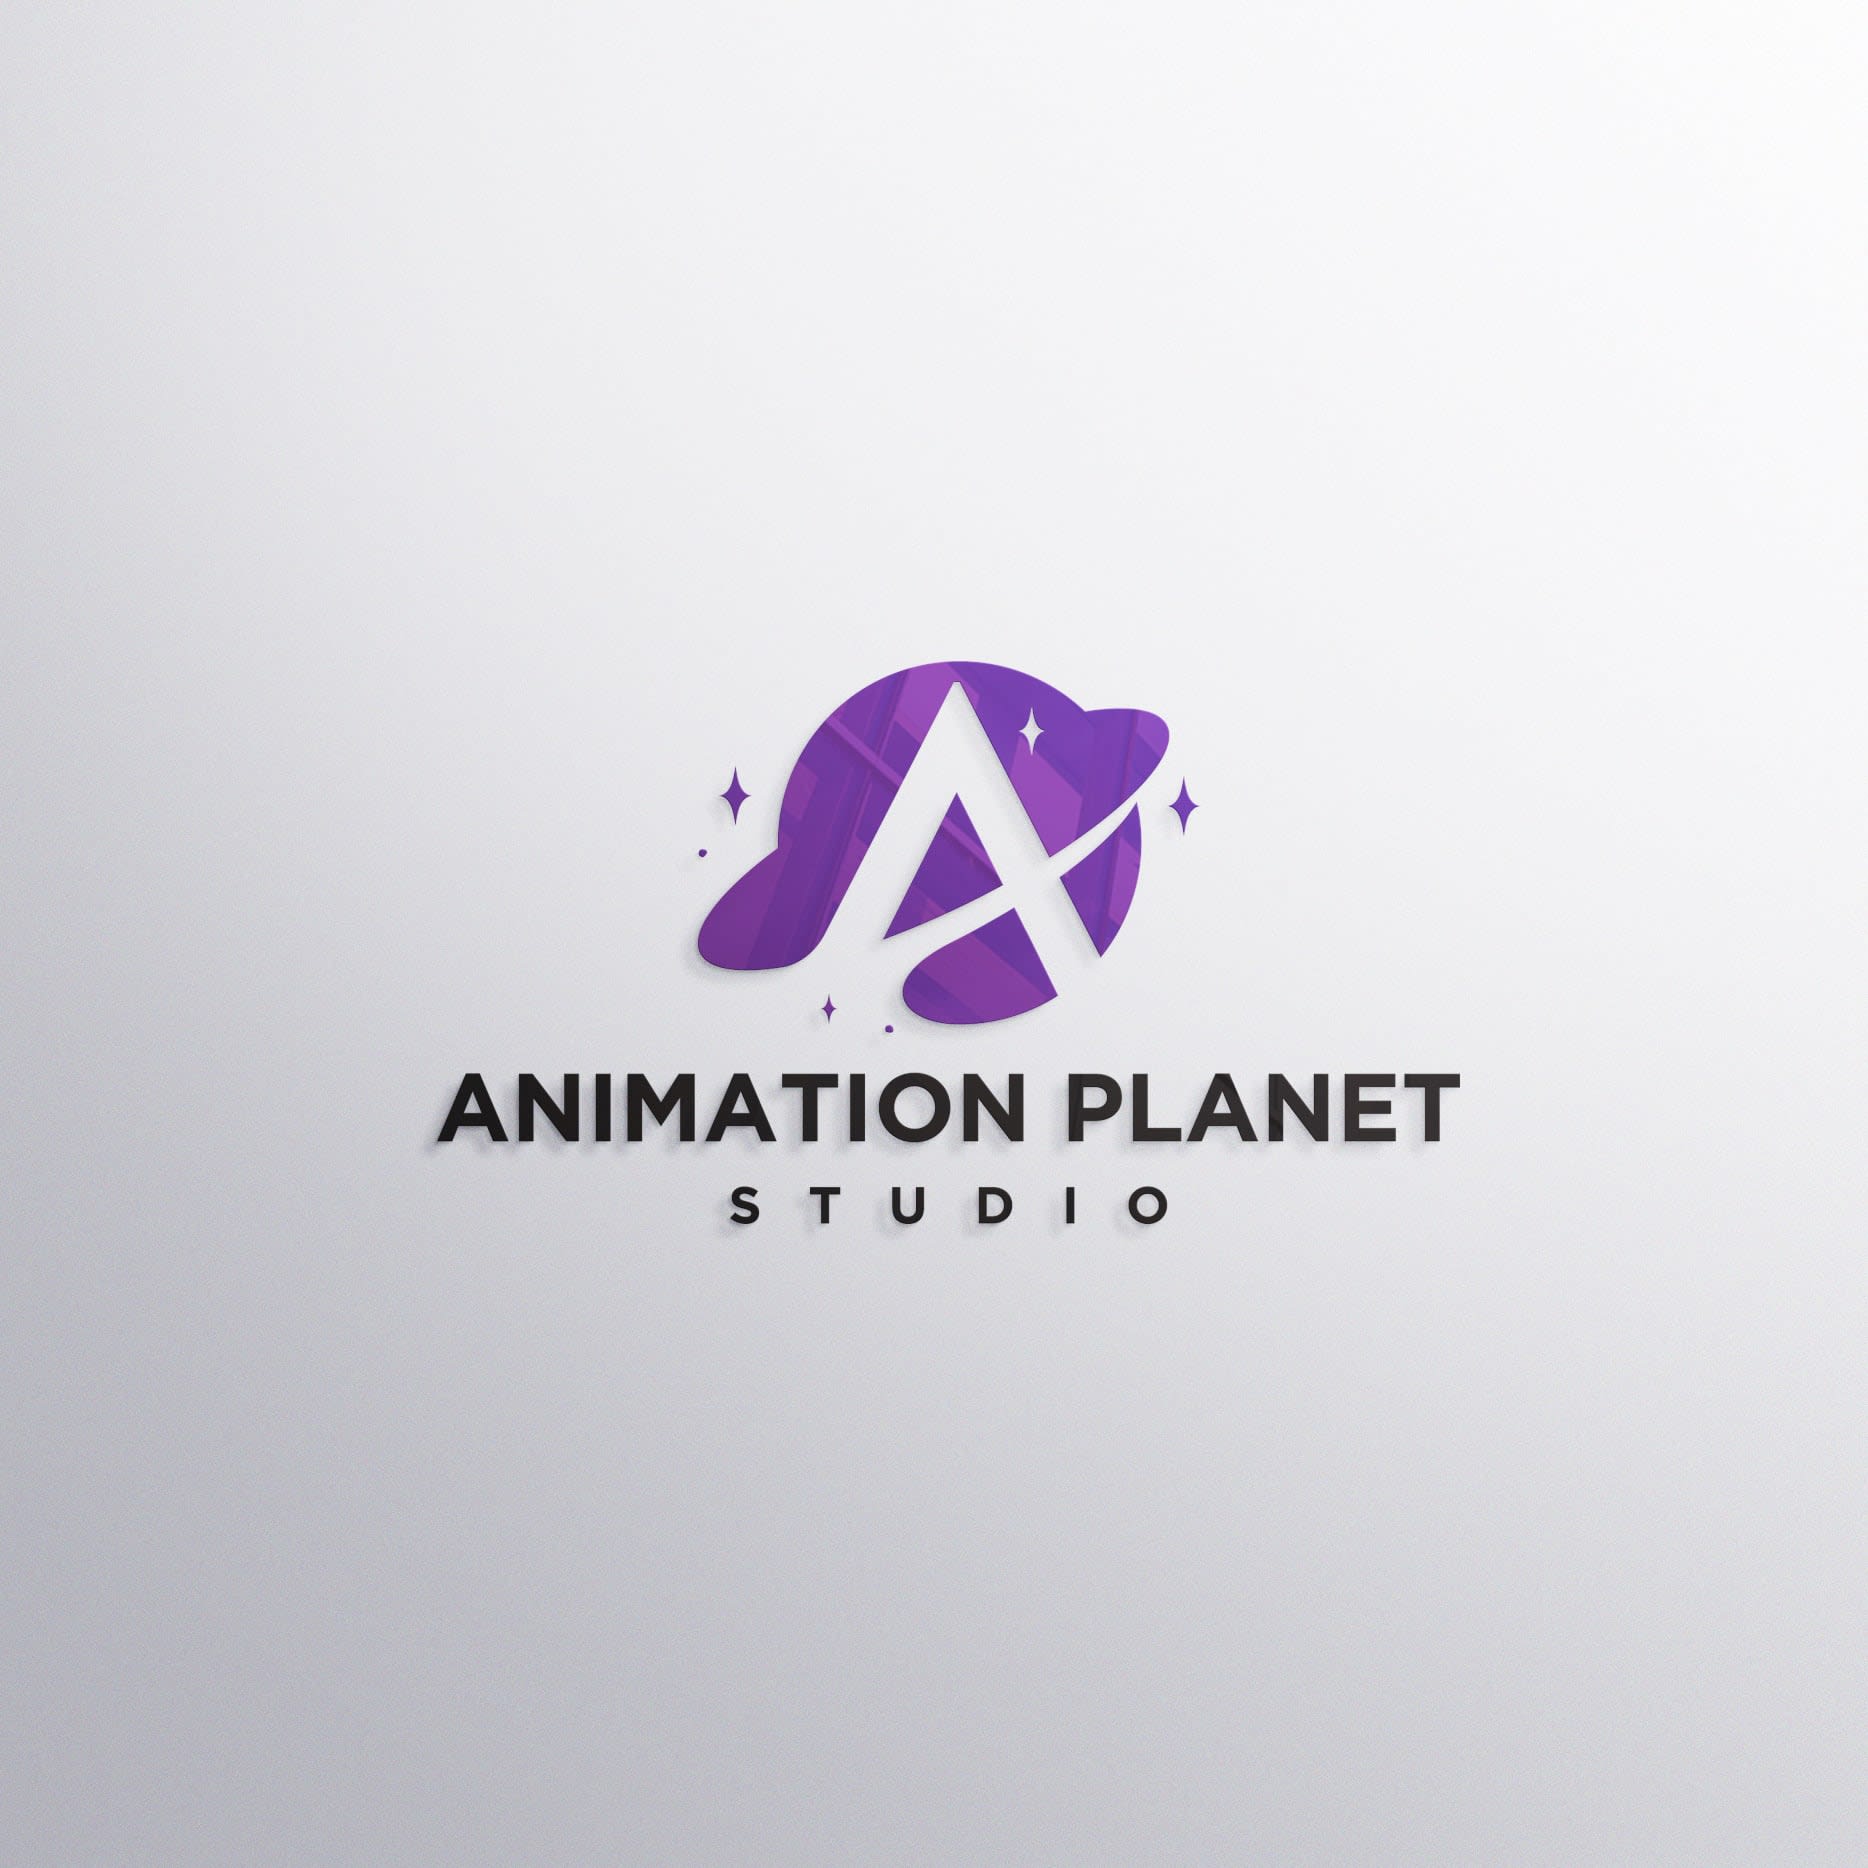 Animation Planet Studio